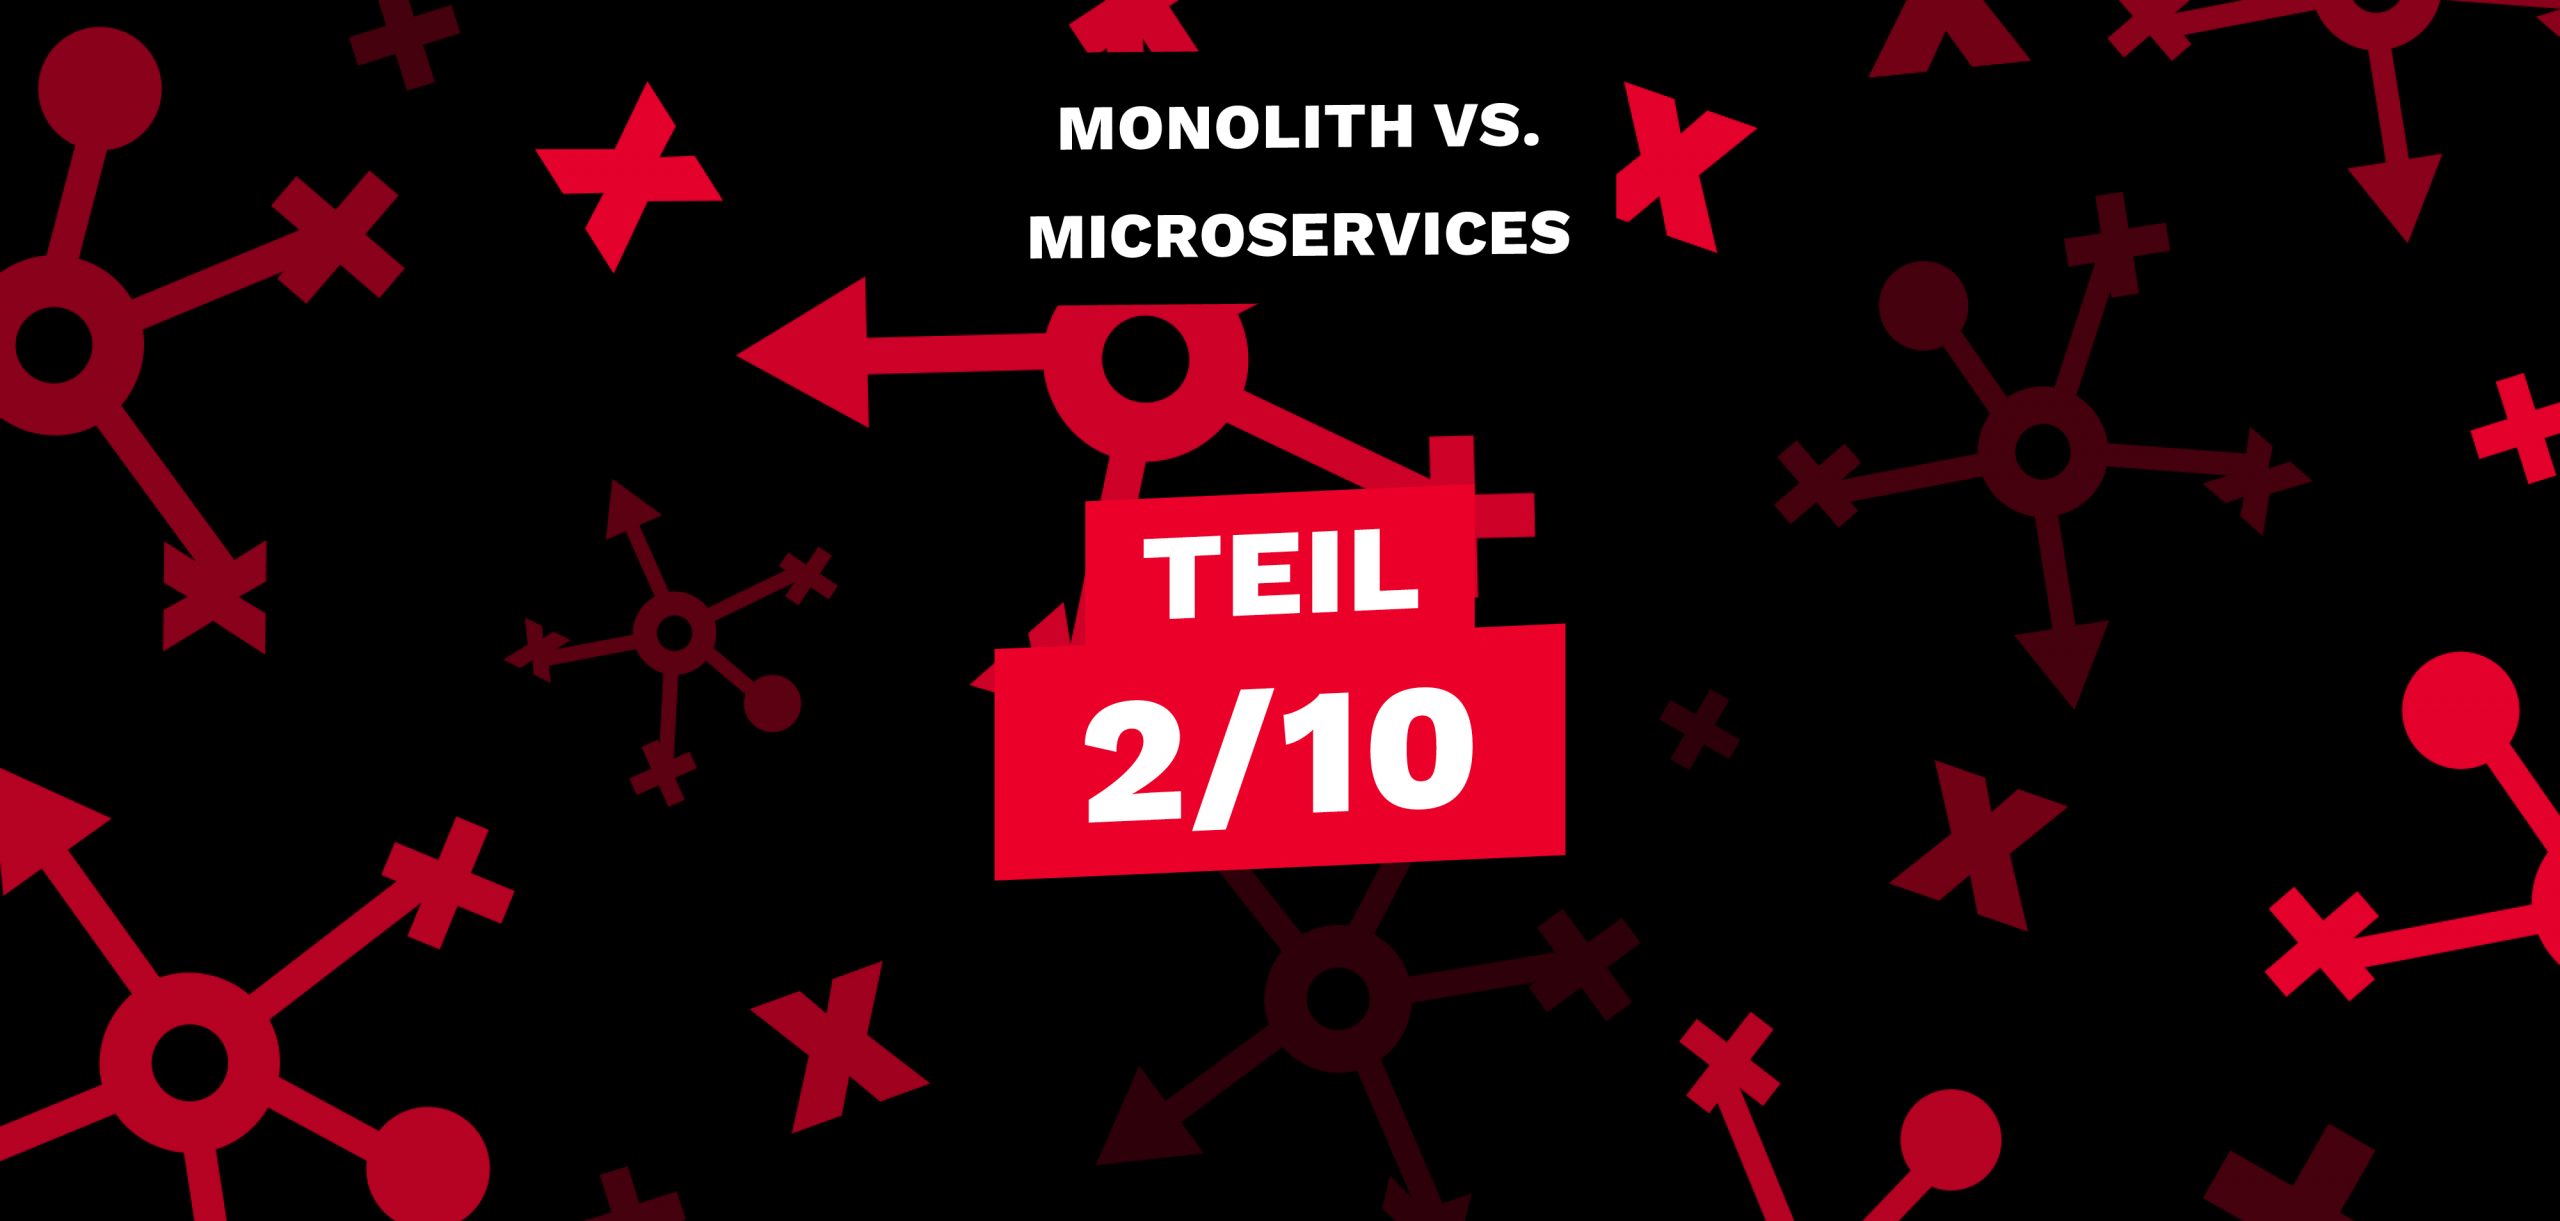 Monolith vs. Microservices Part 2: Wer hat die bessere Performance